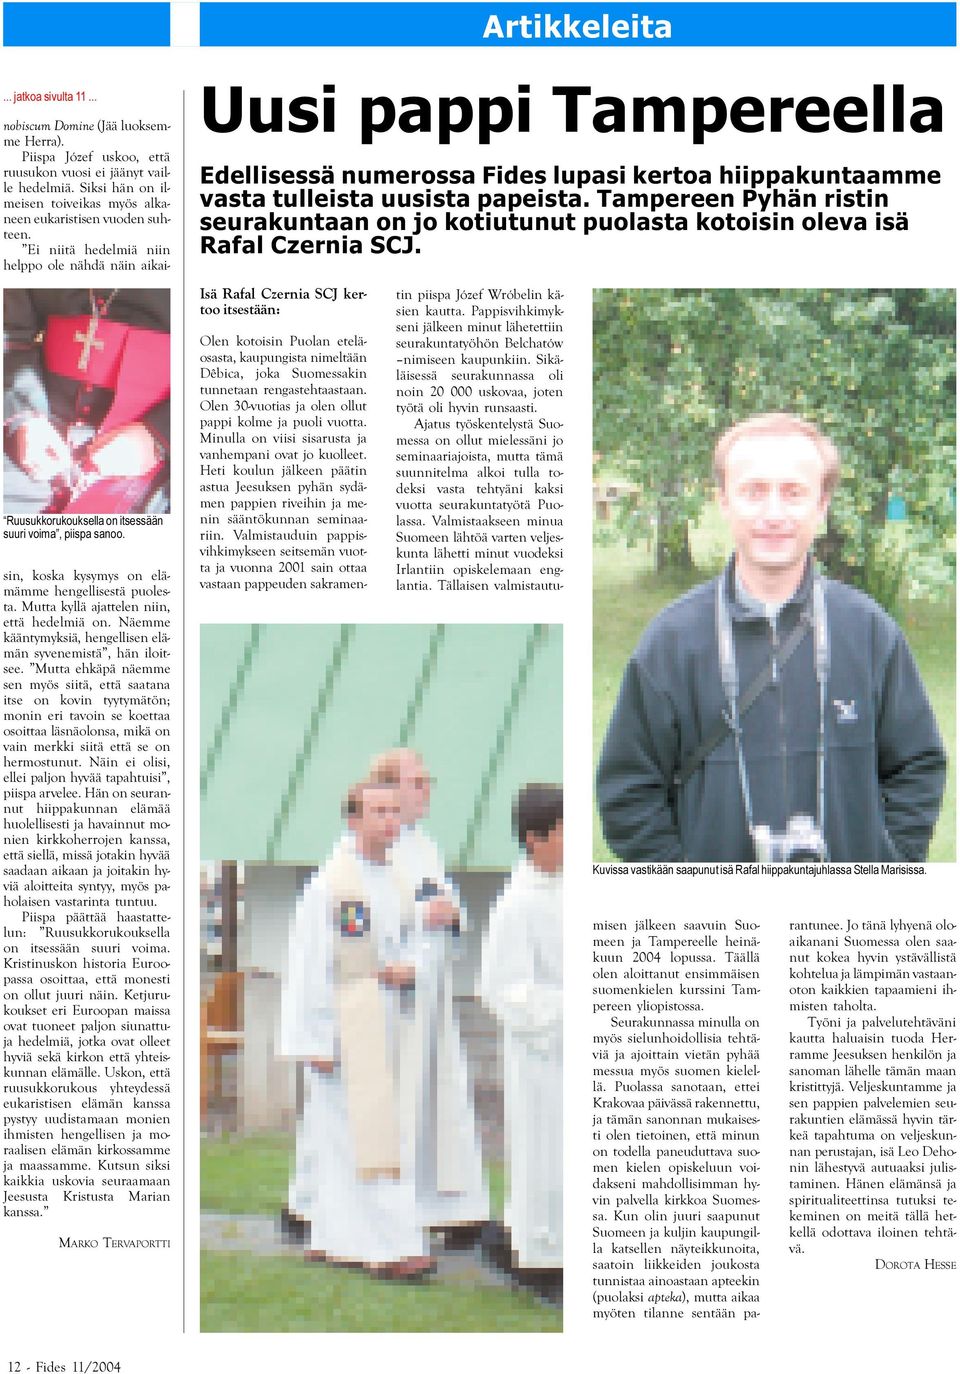 Ei niitä hedelmiä niin helppo ole nähdä näin aikai- Uusi pappi Tampereella Edellisessä numerossa Fides lupasi kertoa hiippakuntaamme vasta tulleista uusista papeista.